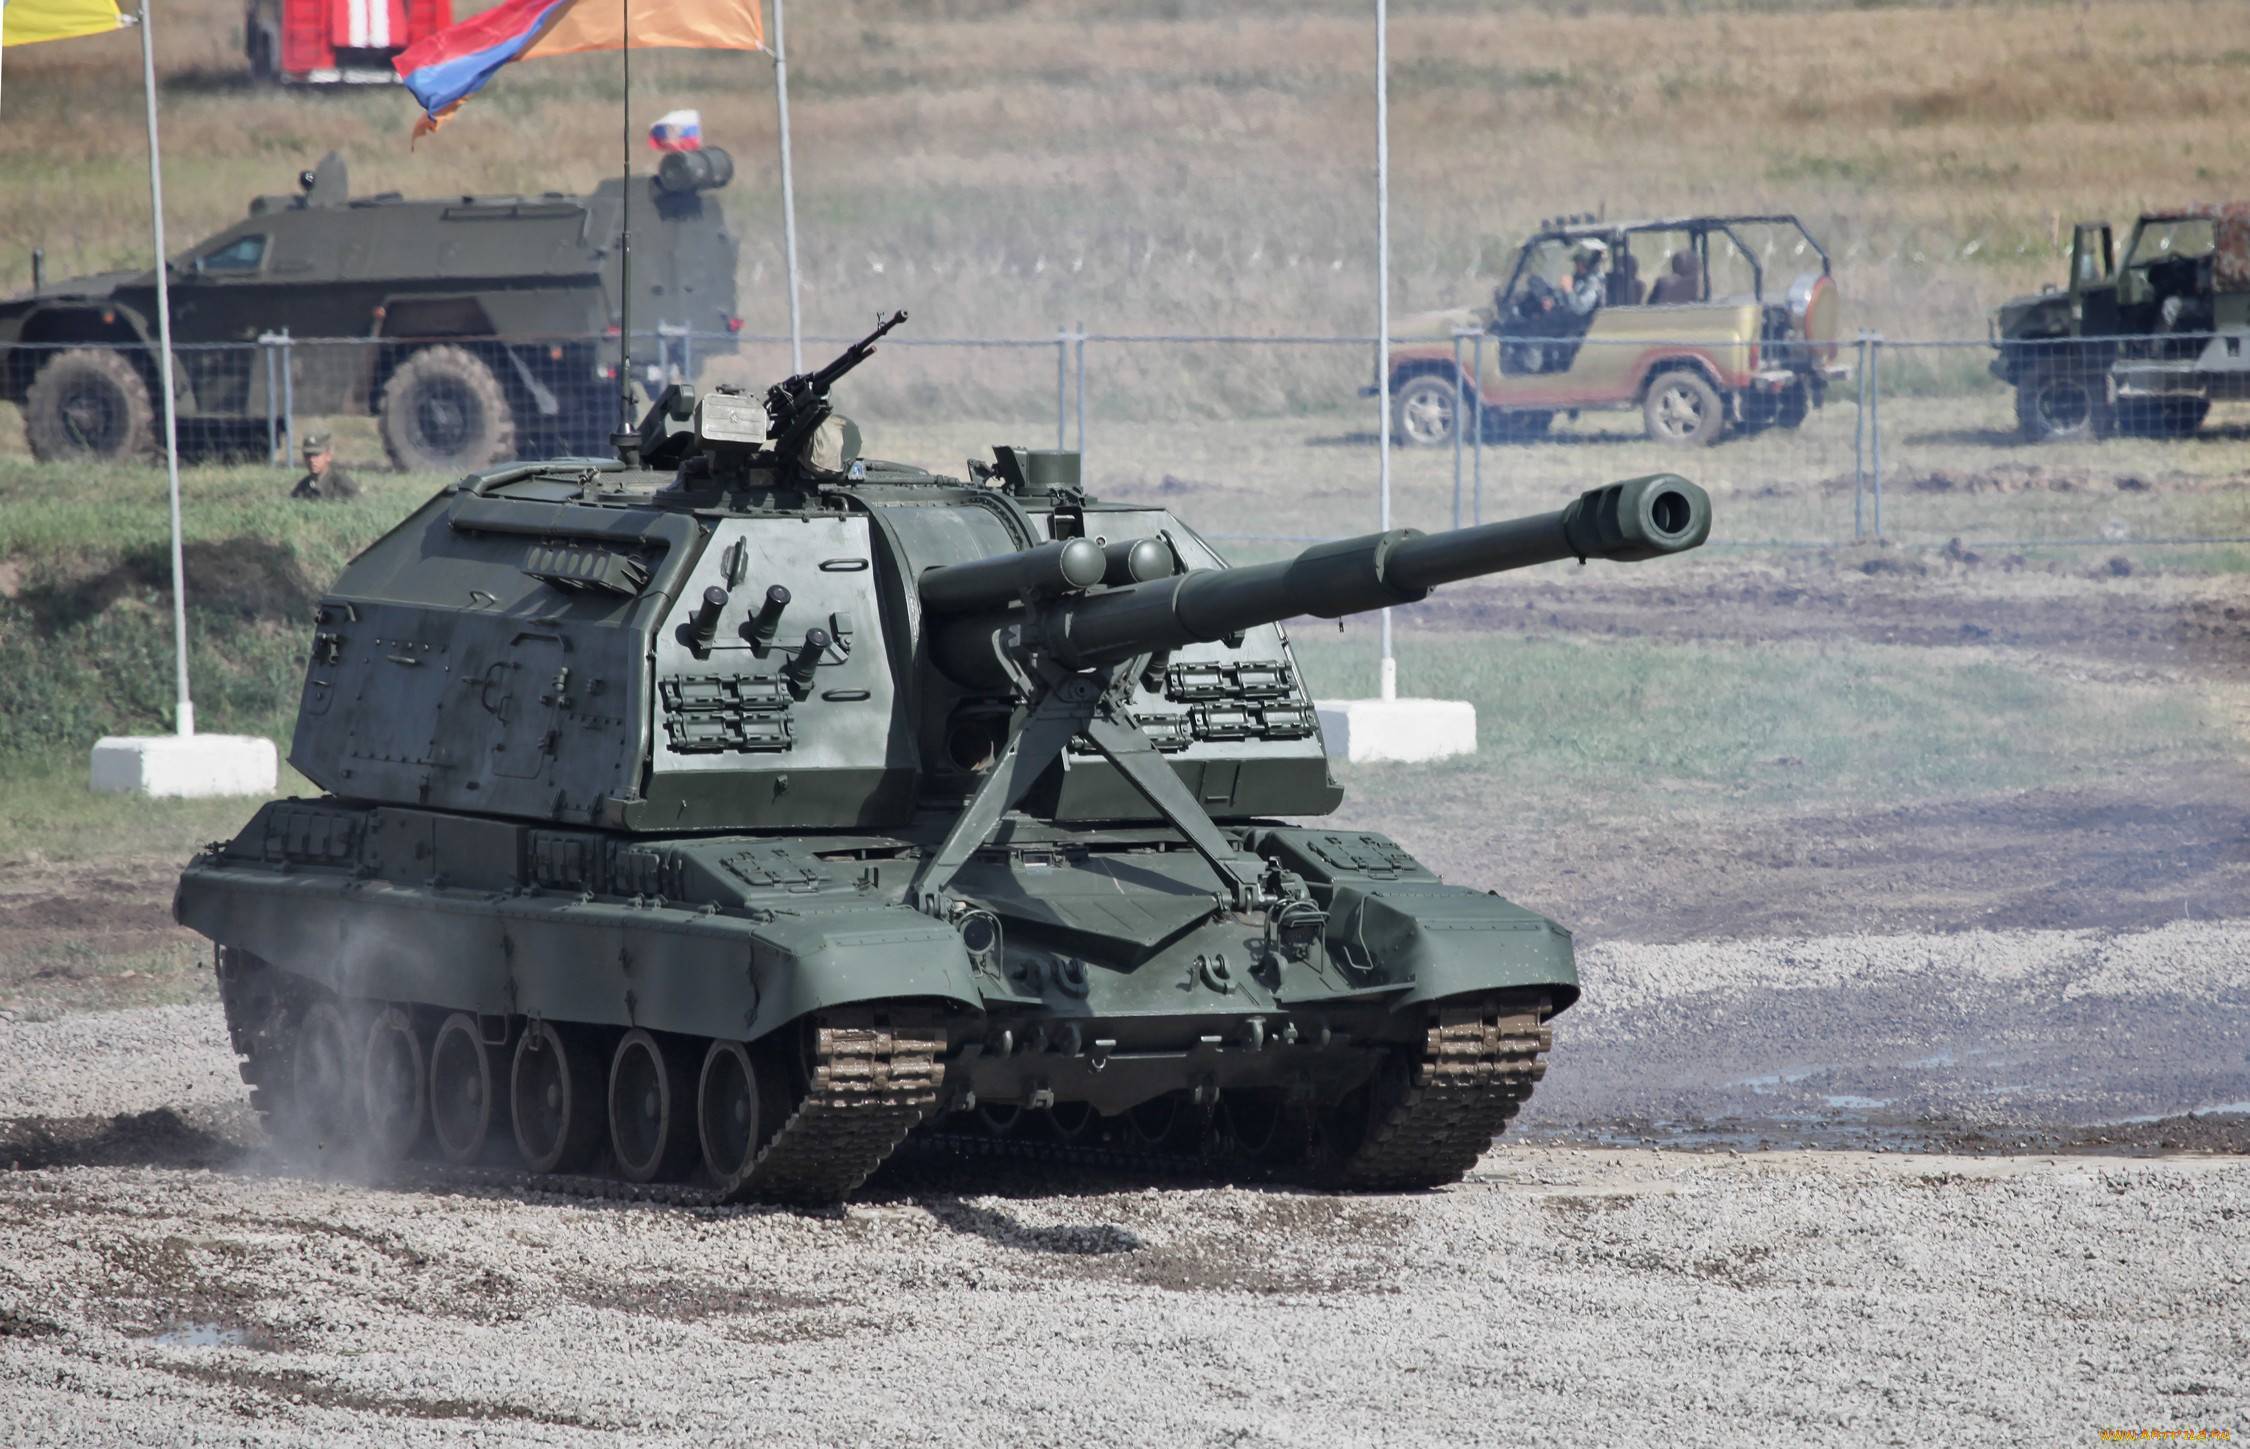 Гаубица мста-б (2а65) 152-мм ттх. фото. видео. скорострельность